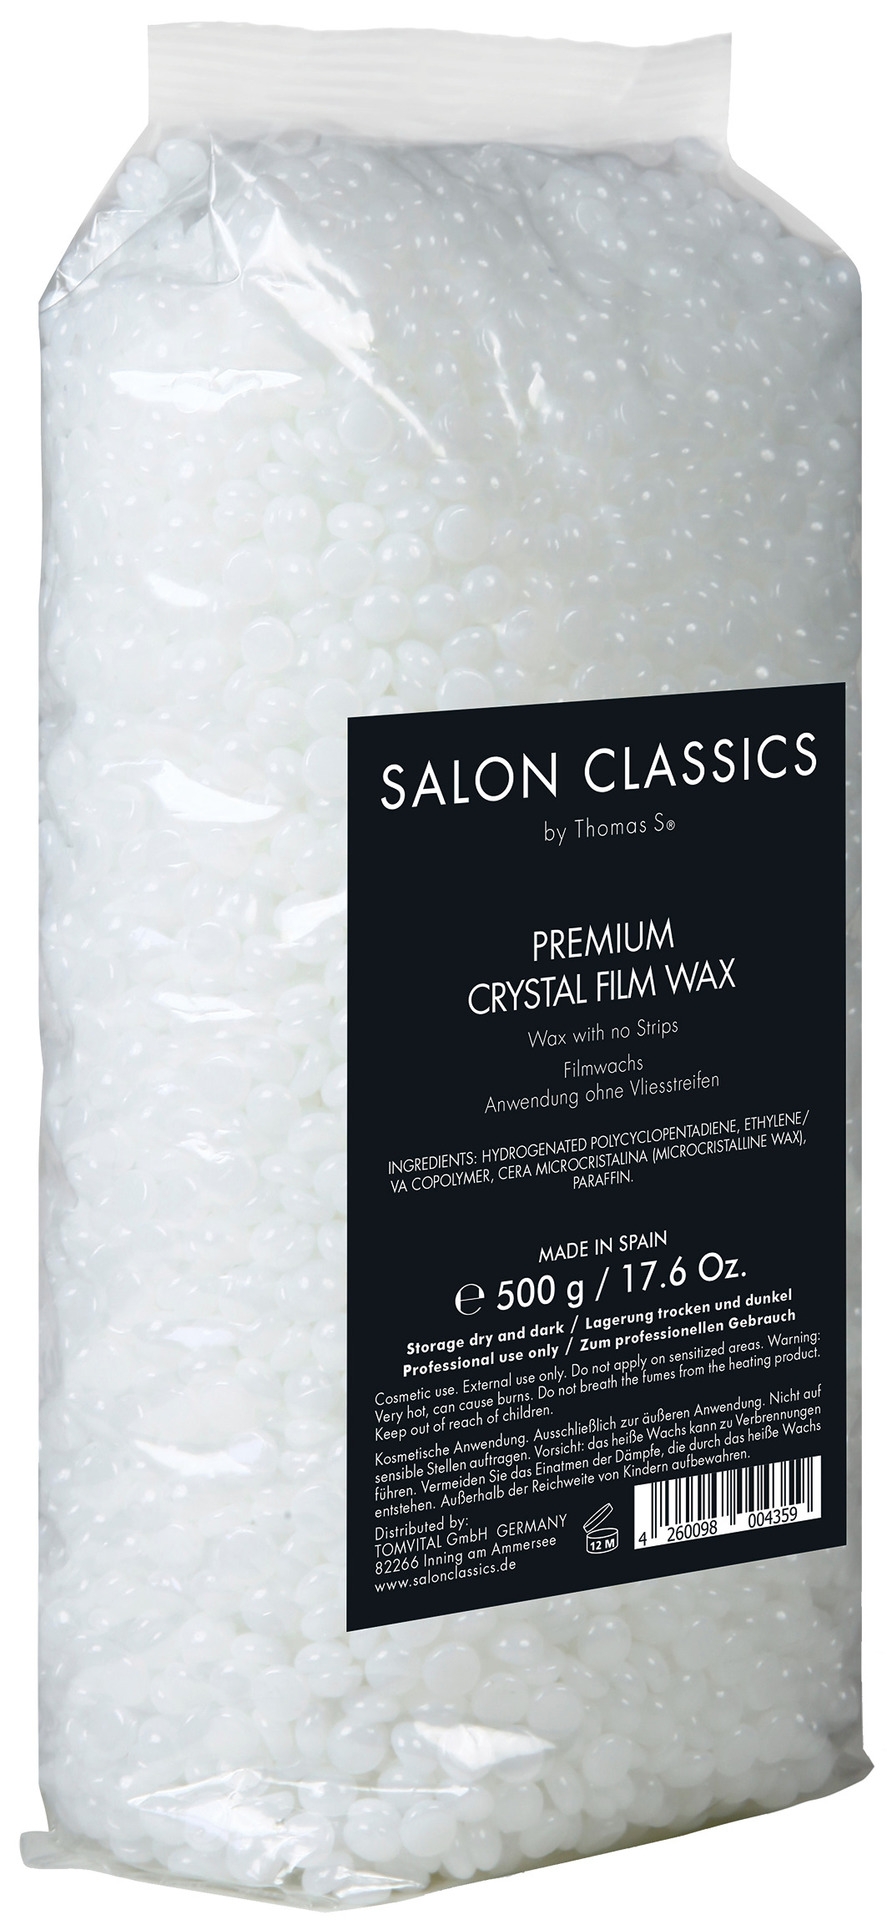 Berodin Salon Classics Crystal Film Wax Pearls | 500 g